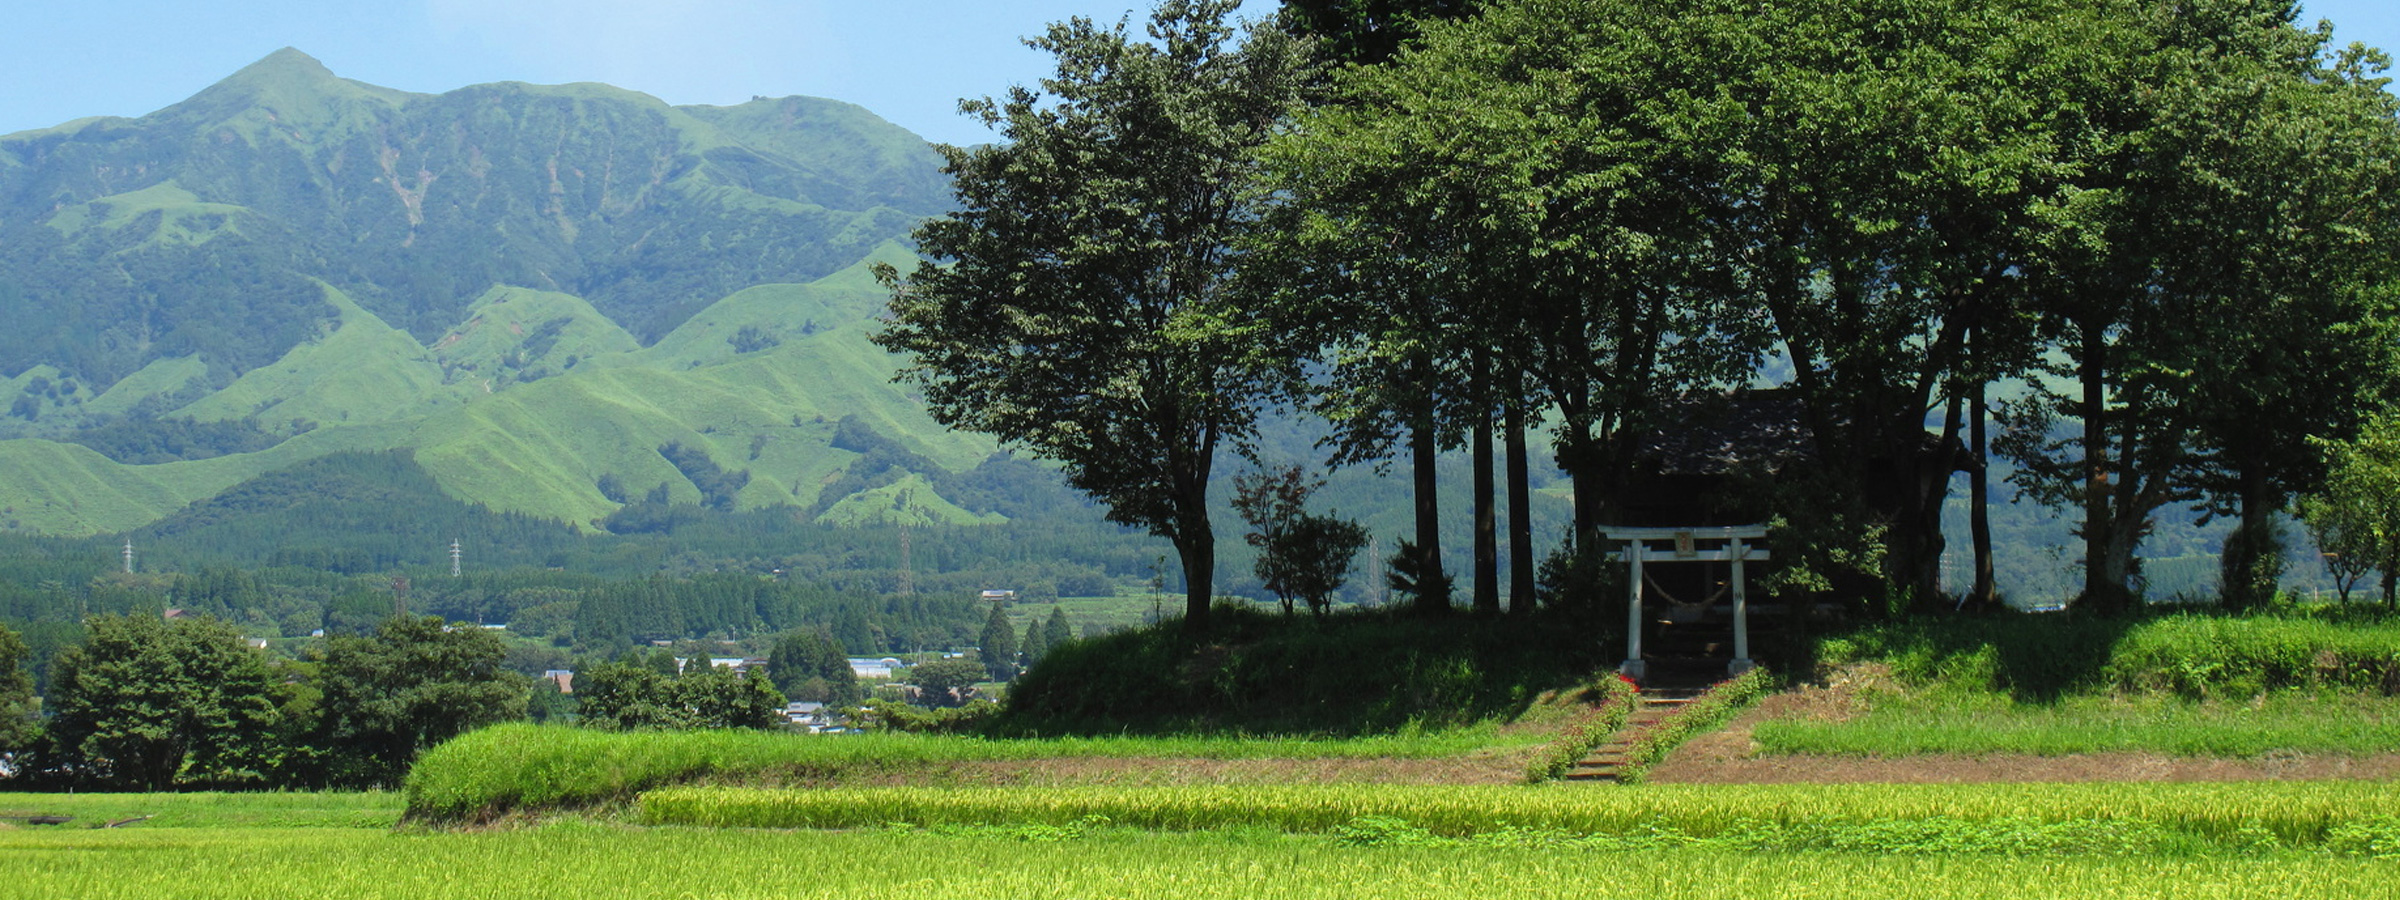 原風景 日本の原風景とは | 日本の原風景を守るキャンペーン